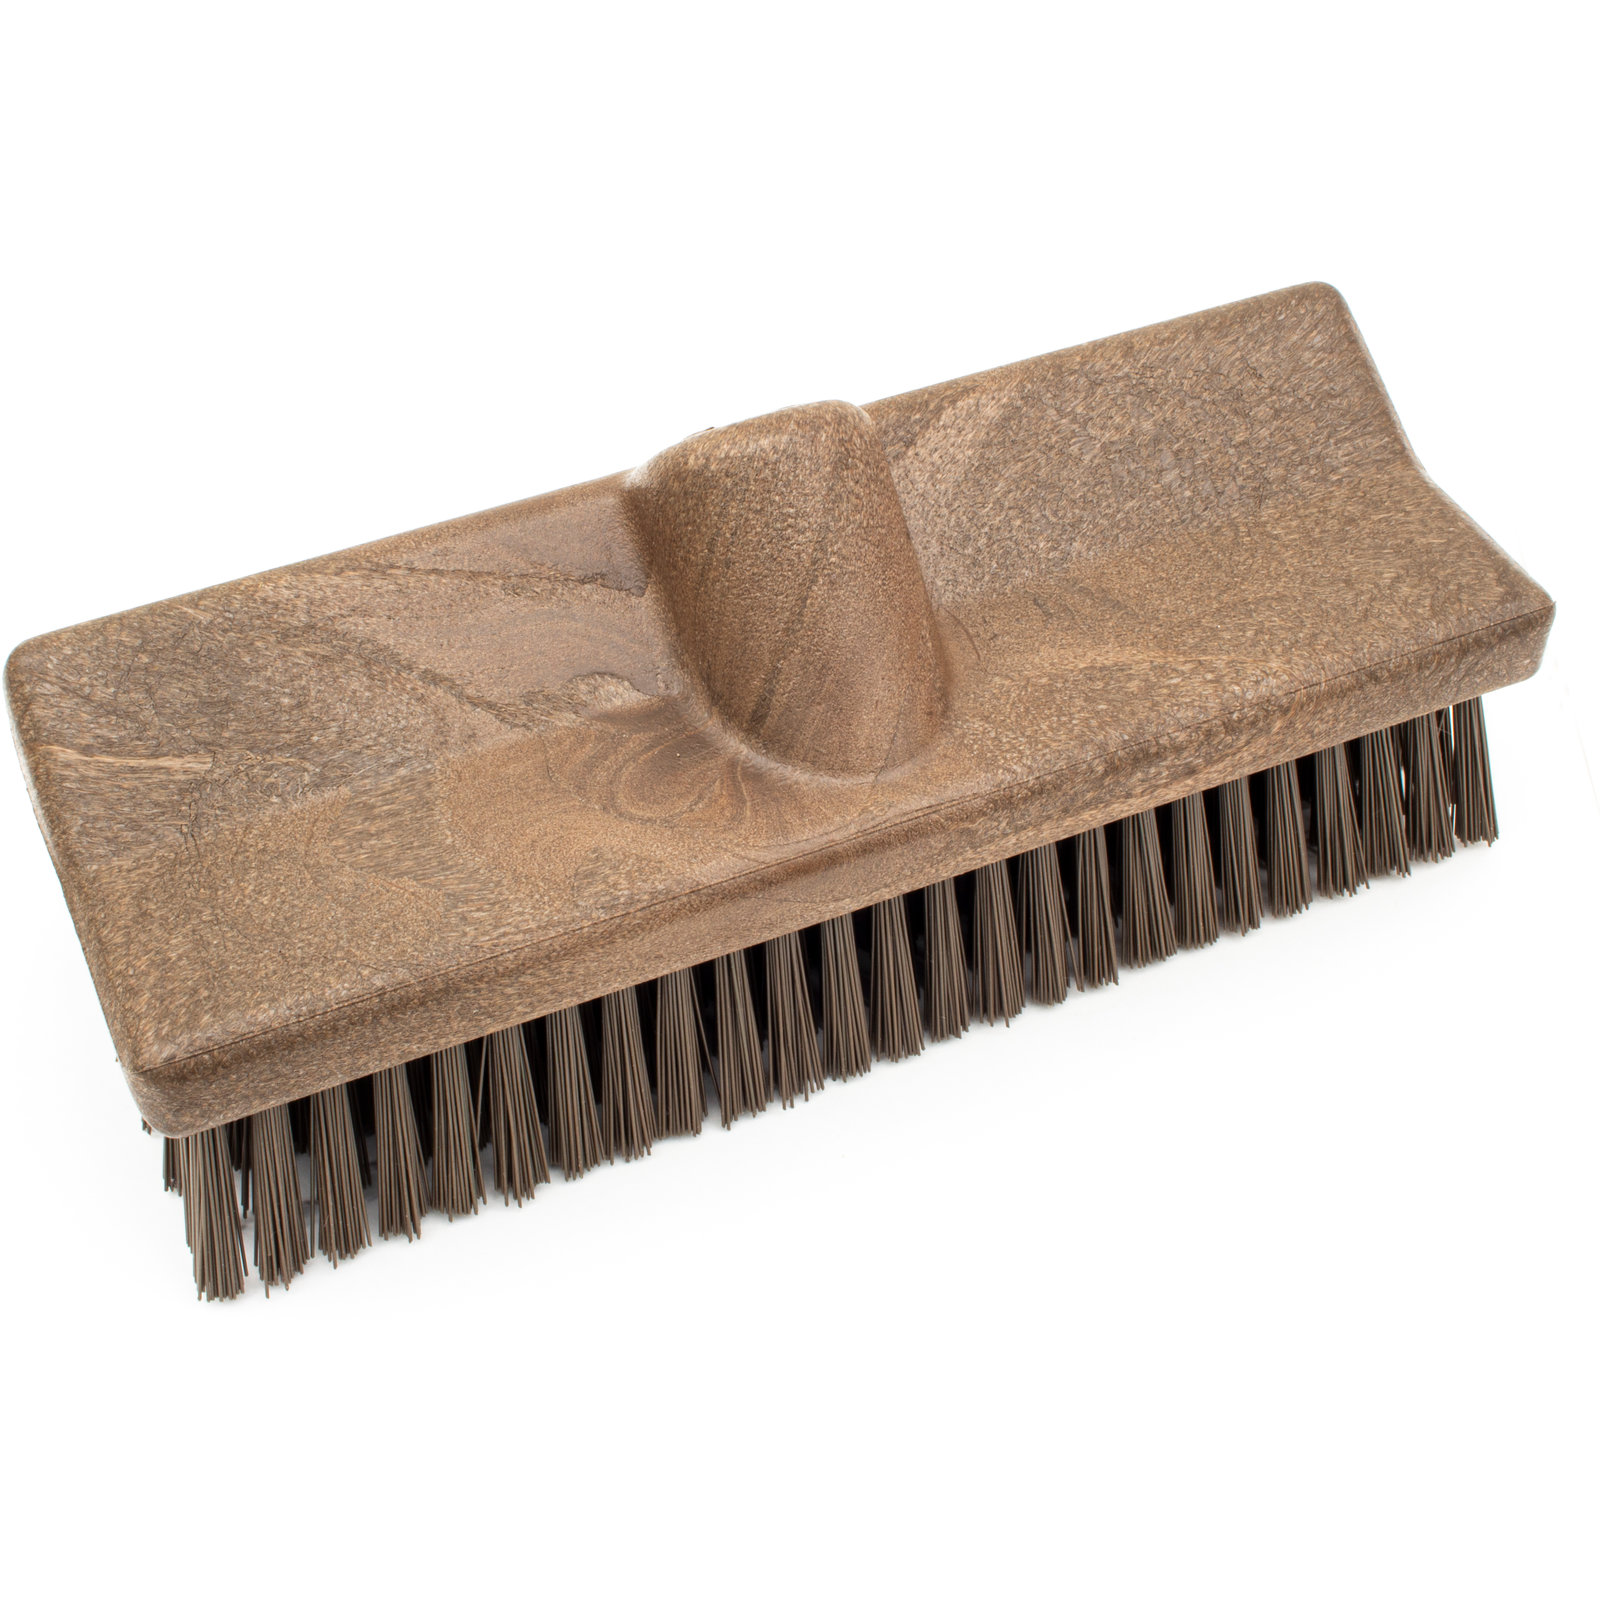 Dry Foam Carpet Upholstery Cleaner & Scrub Brush Kit K-1023